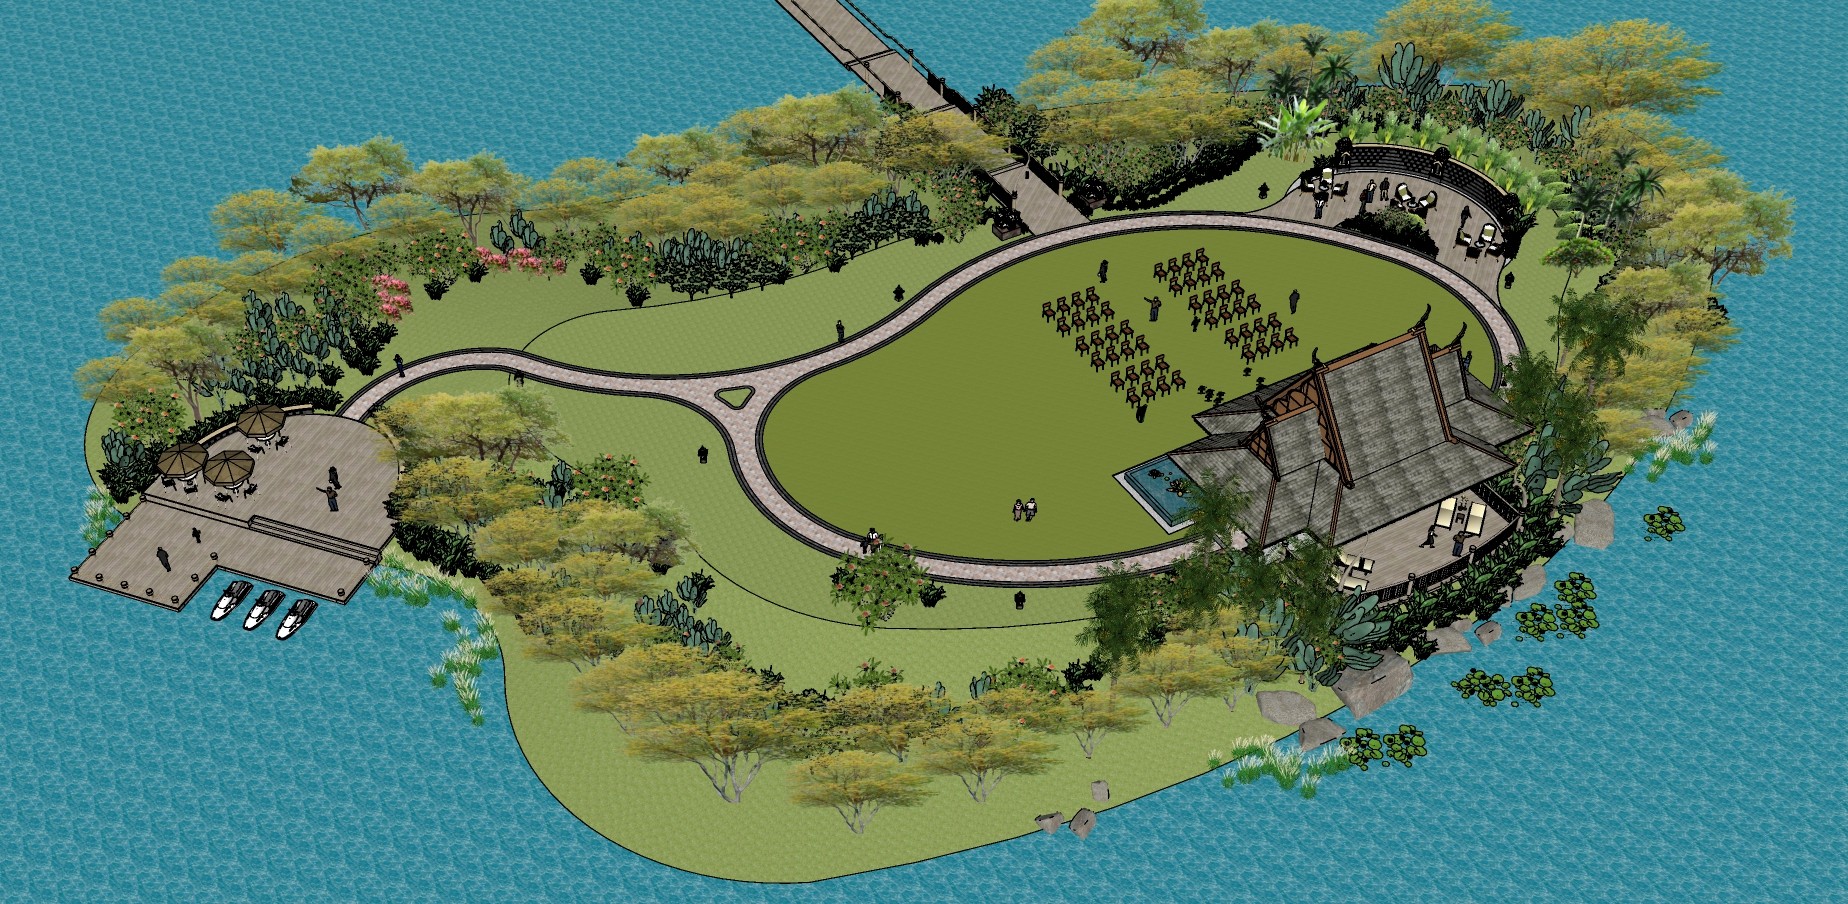 54东南亚风格婚礼主题岛屿景观设计  主题滨湖公园景观 园林景观  滨水景观带 市民休闲公园su草图模型下载